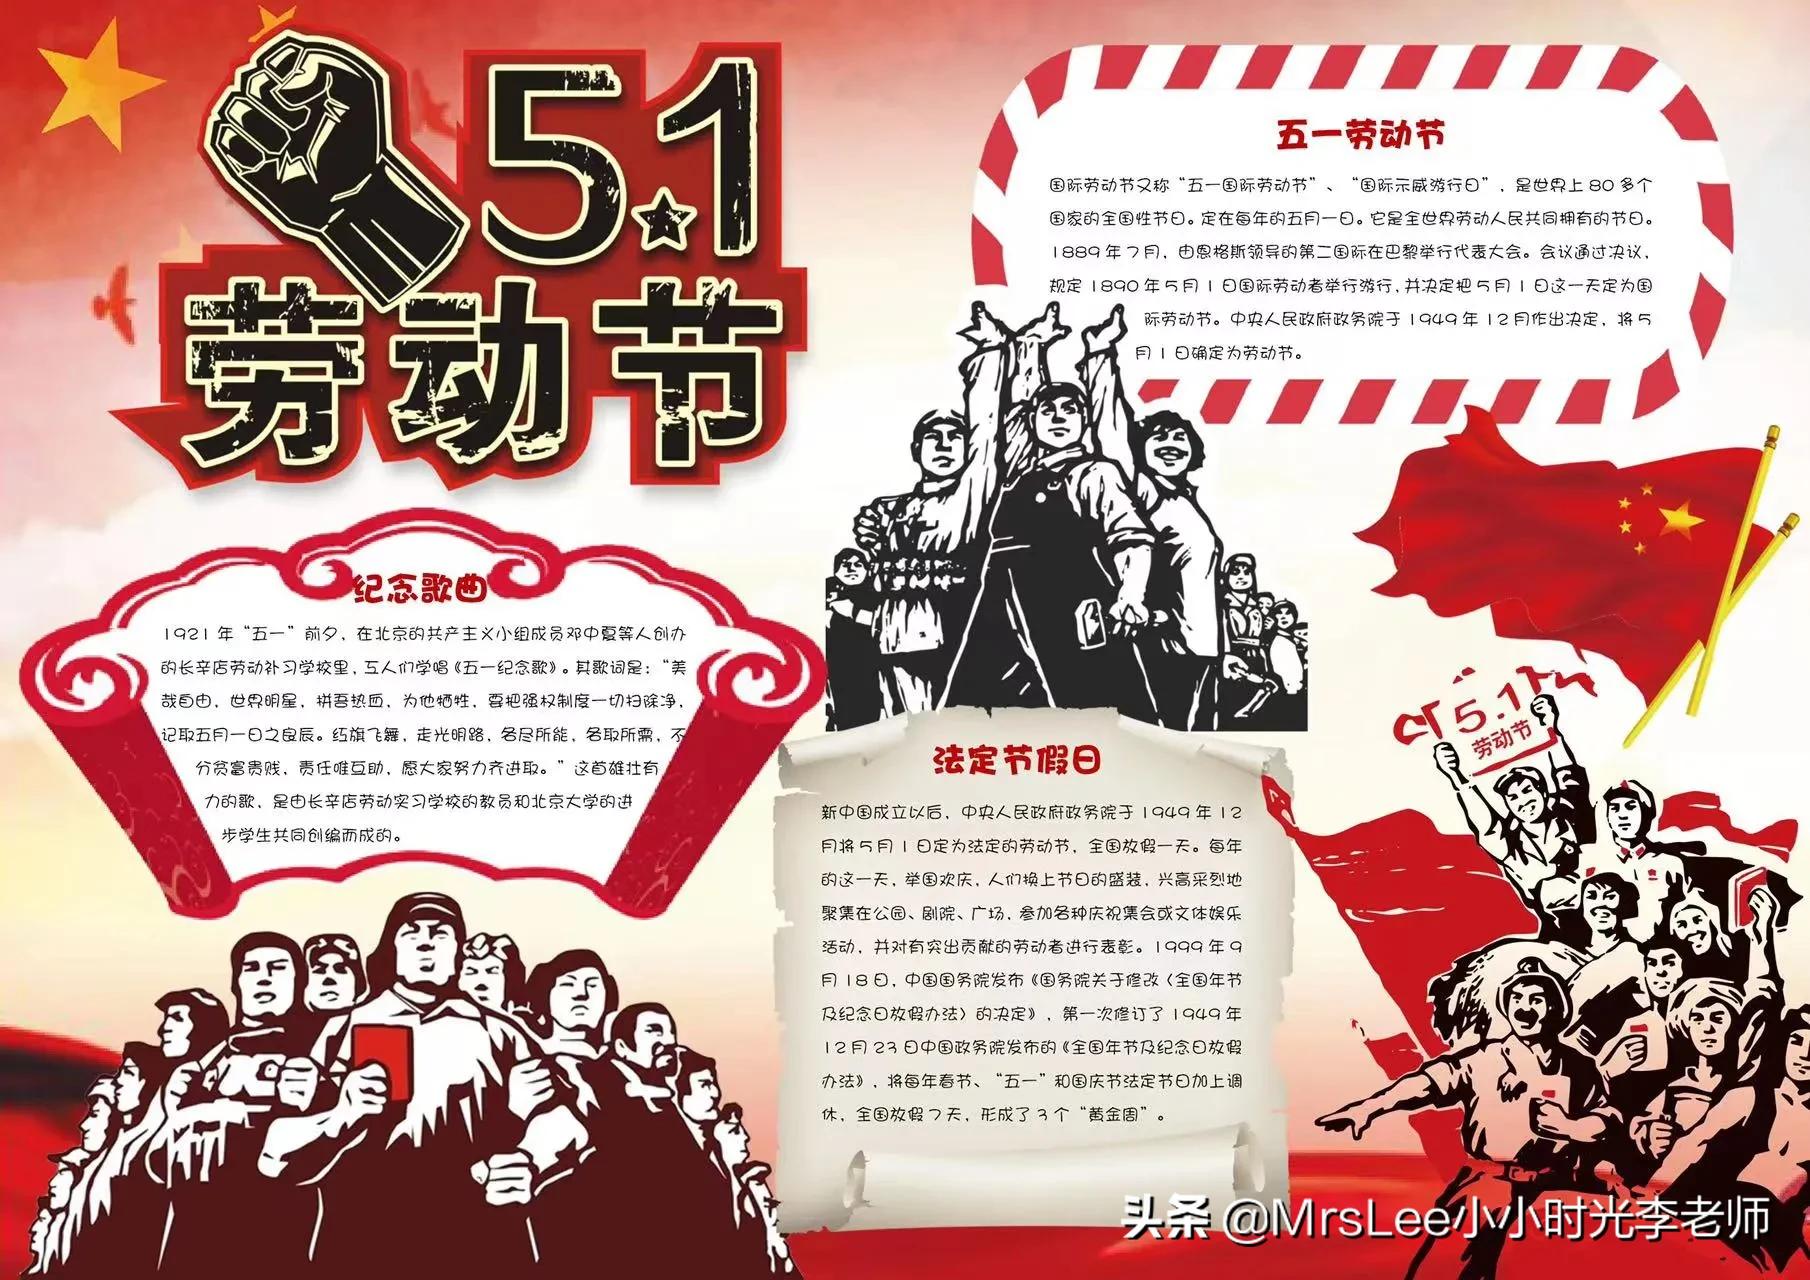 「手抄报」主题《5·1劳动节、出游记》含文案彩图版